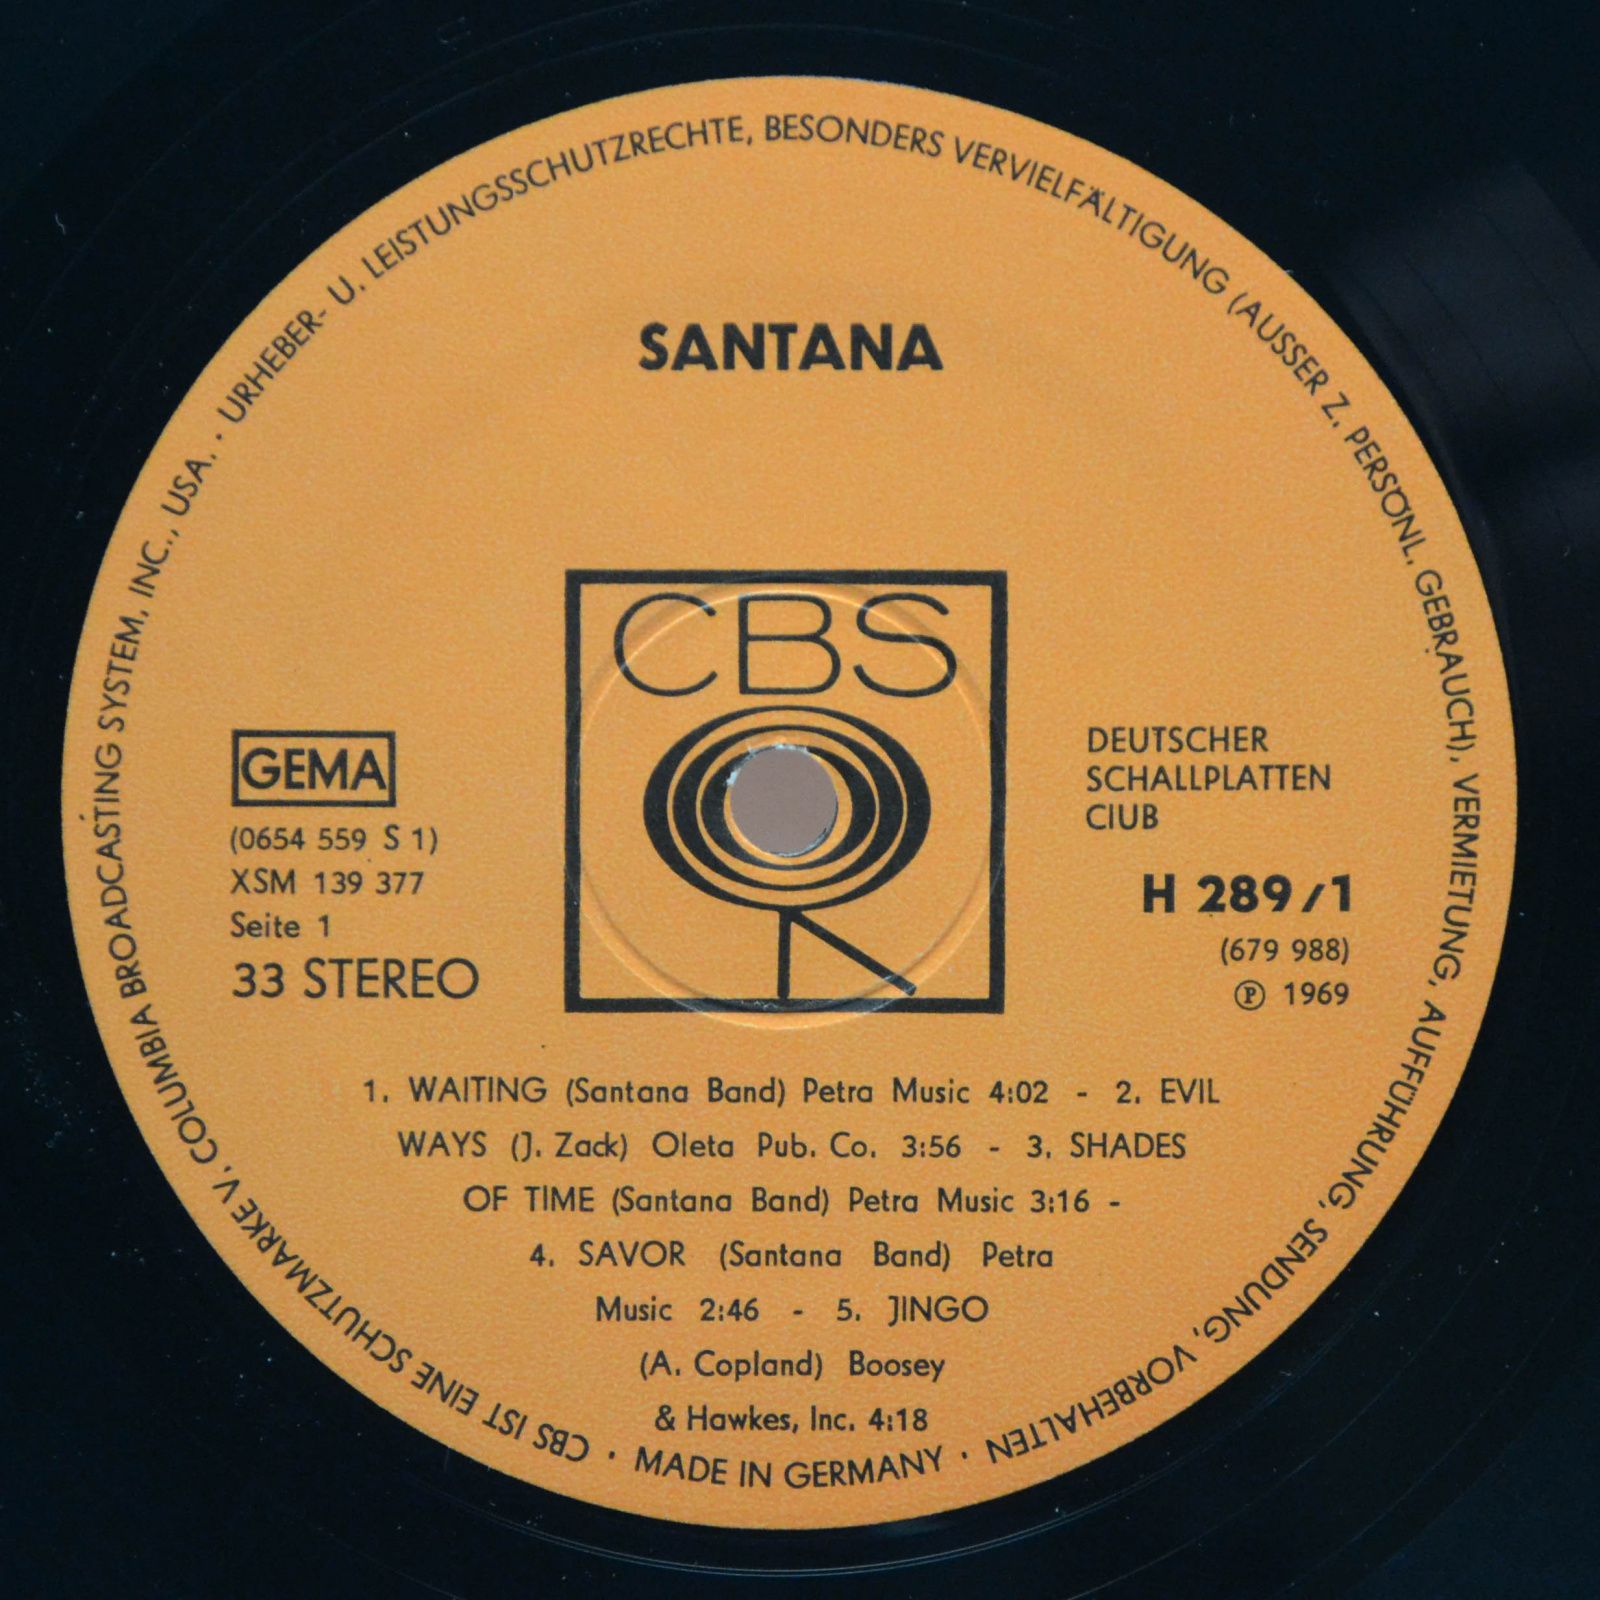 Santana — Santana, 1969